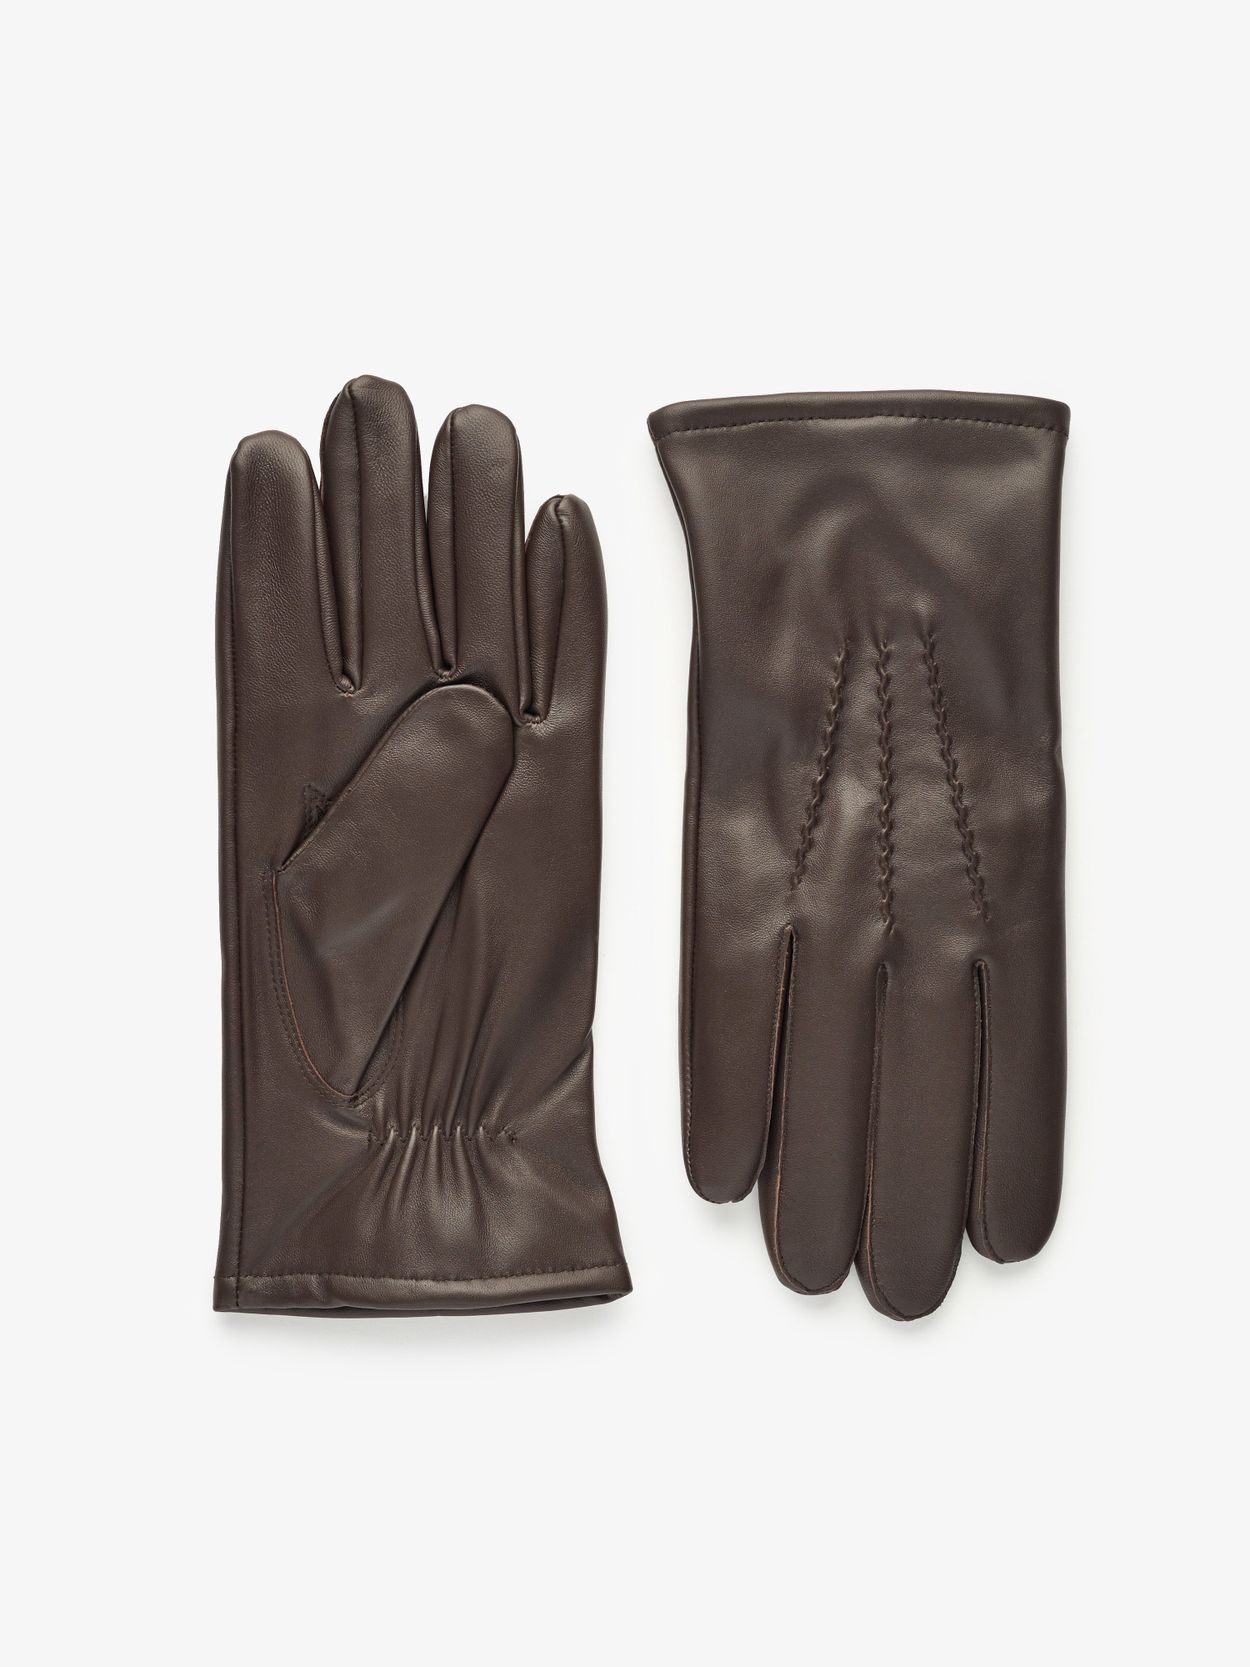 Image number 5 for product Blaue Wollmütze, Schal und braune Handschuhe